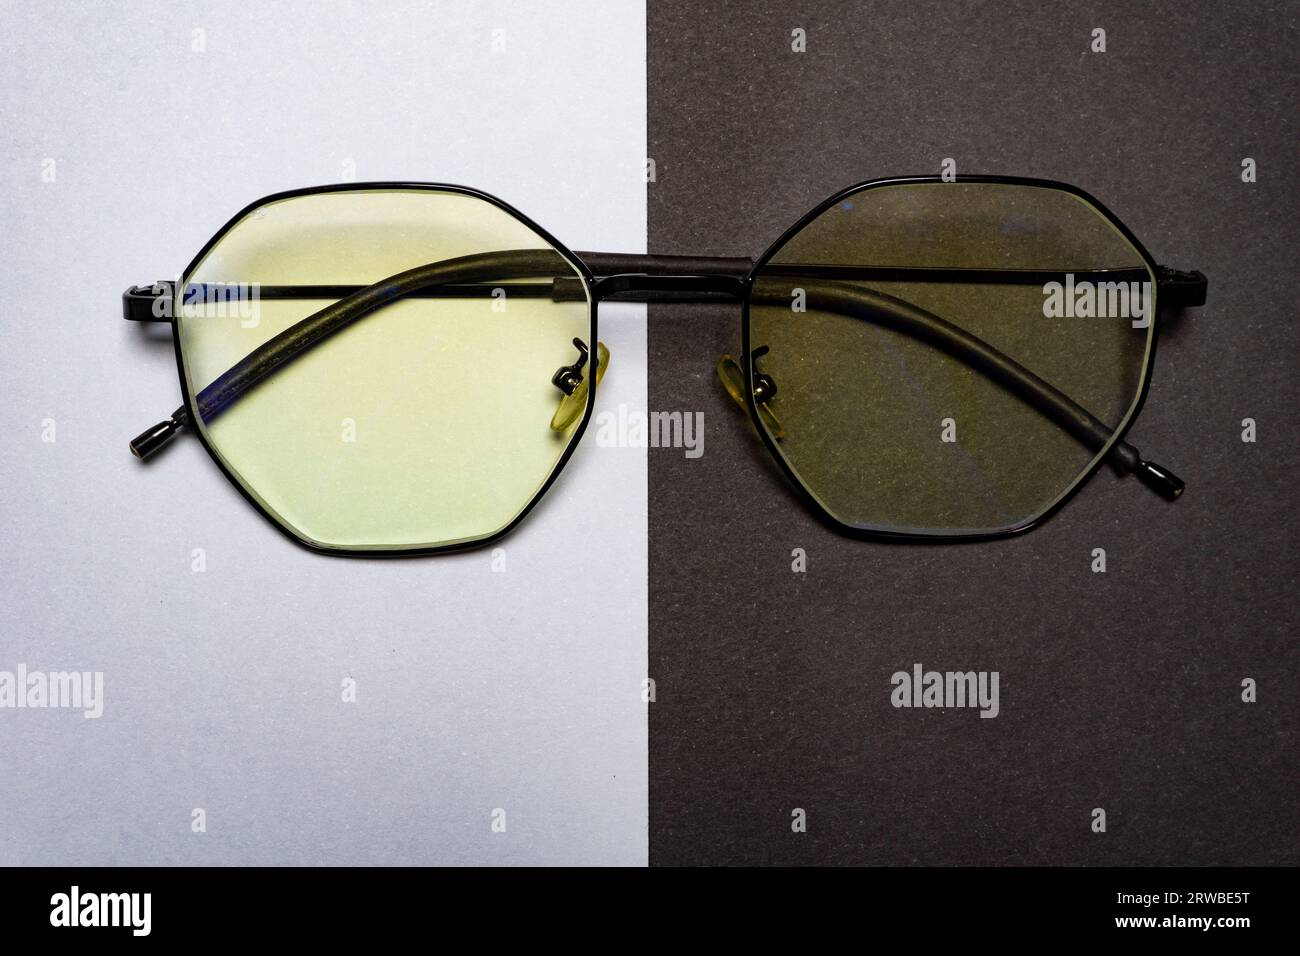 glasses black and white black eyeglass frame Stock Photo